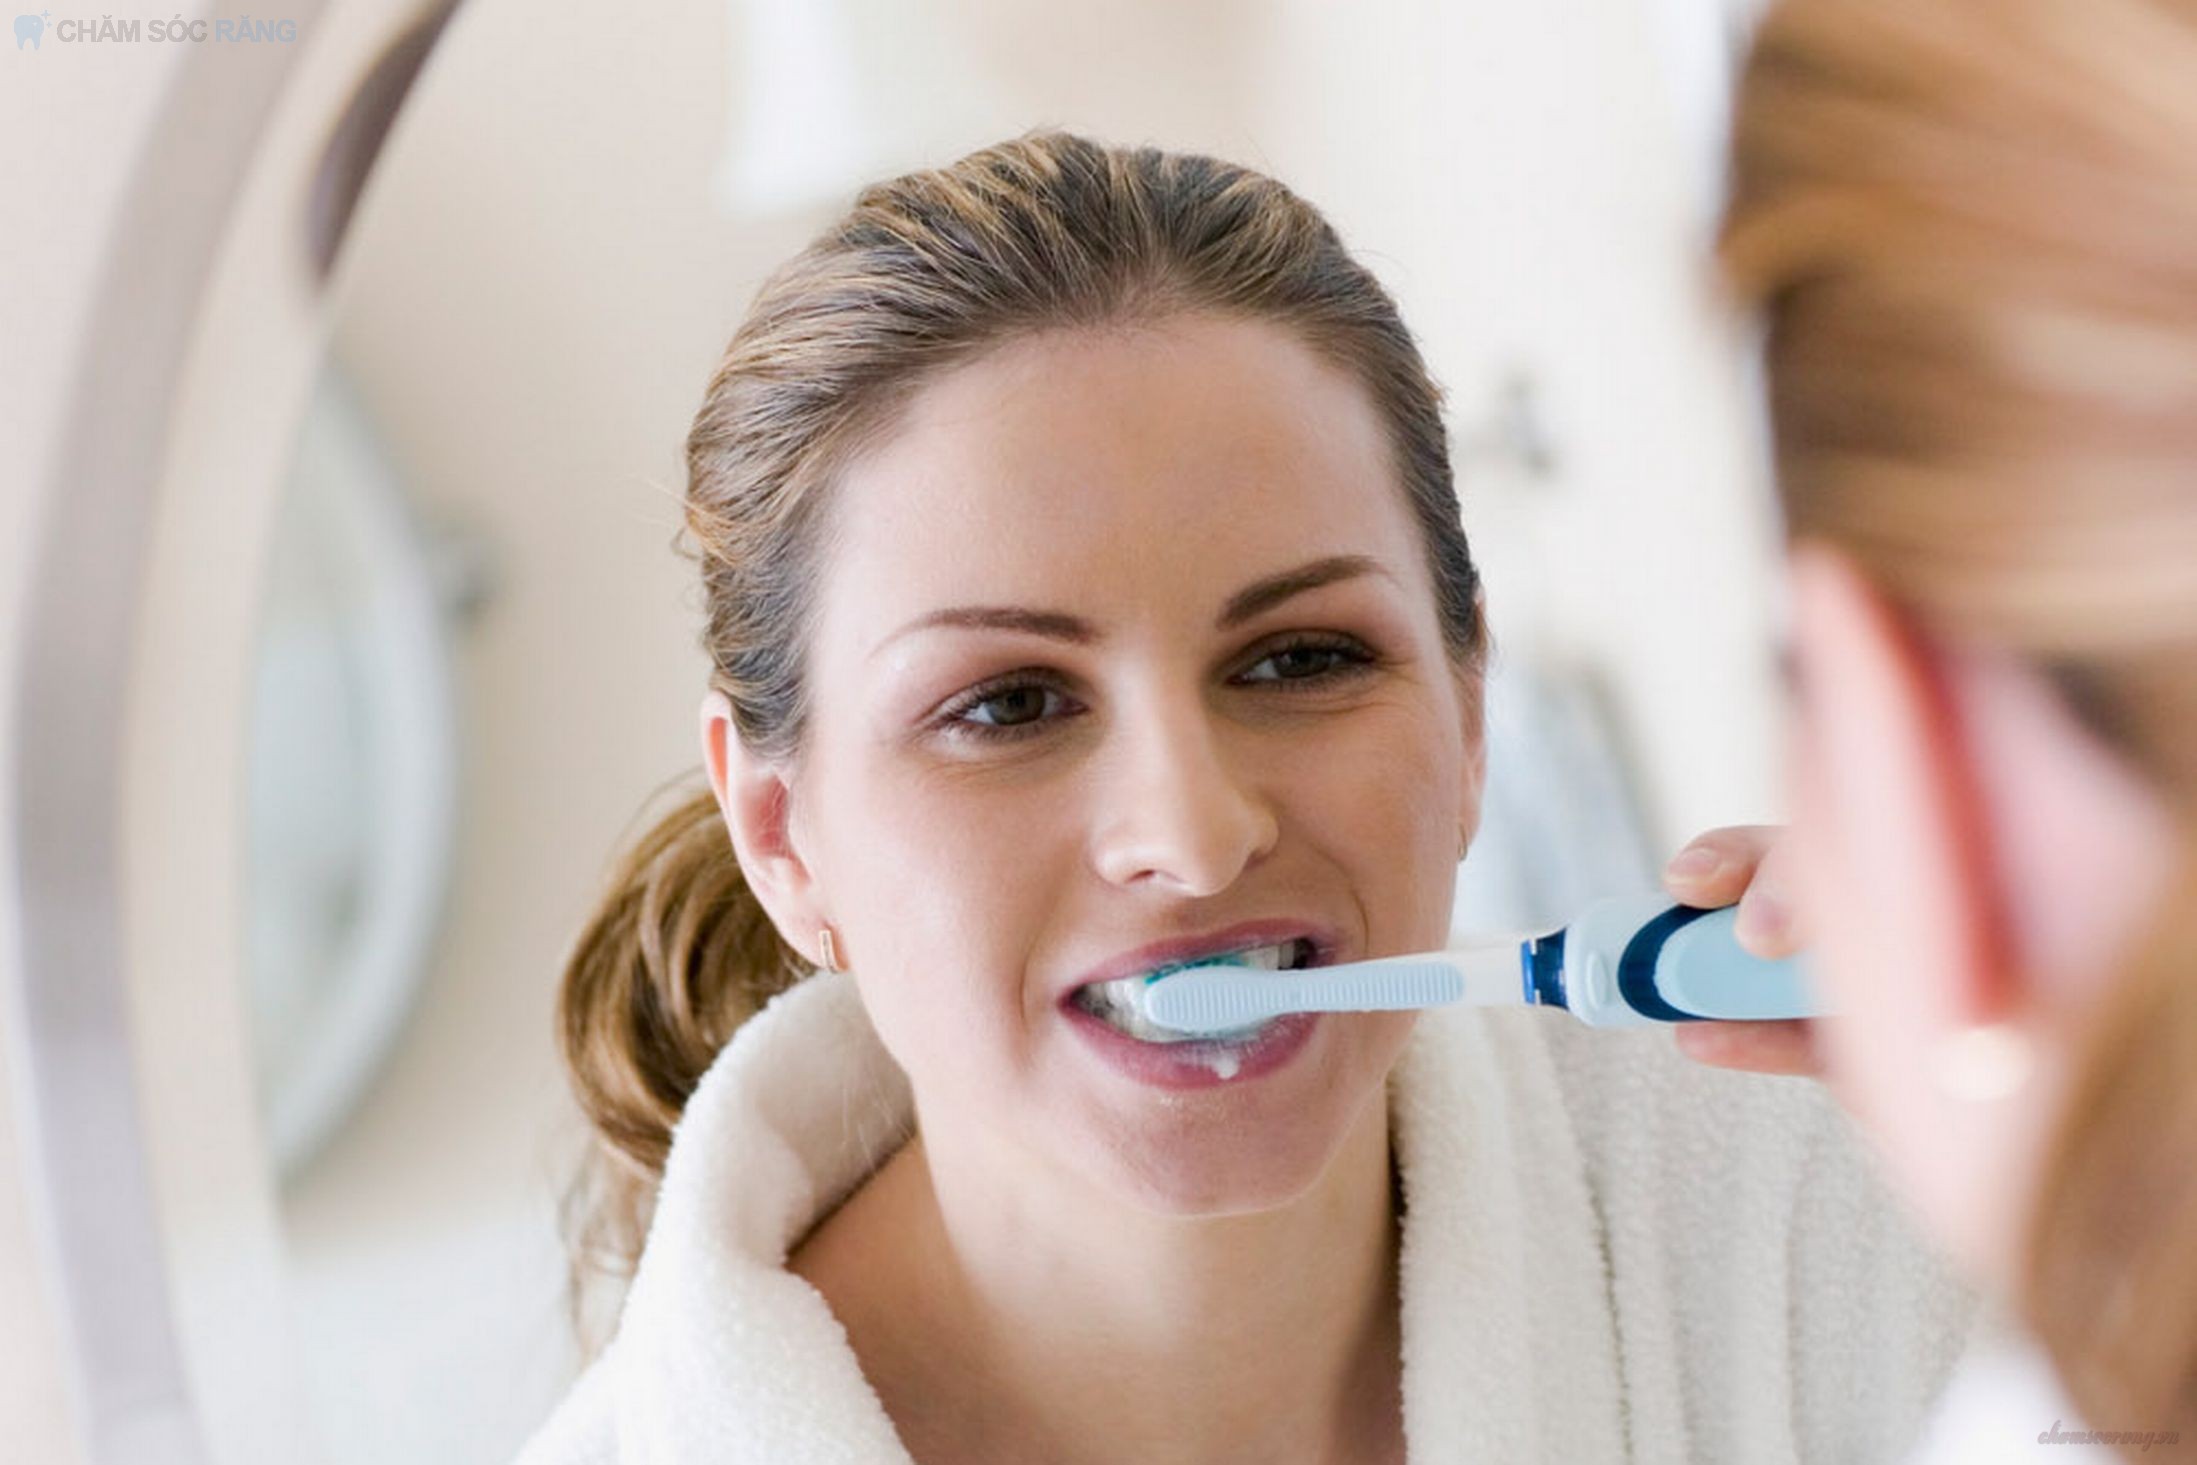 Buồn nôn khi đánh răng là dấu hiệu bệnh gì?